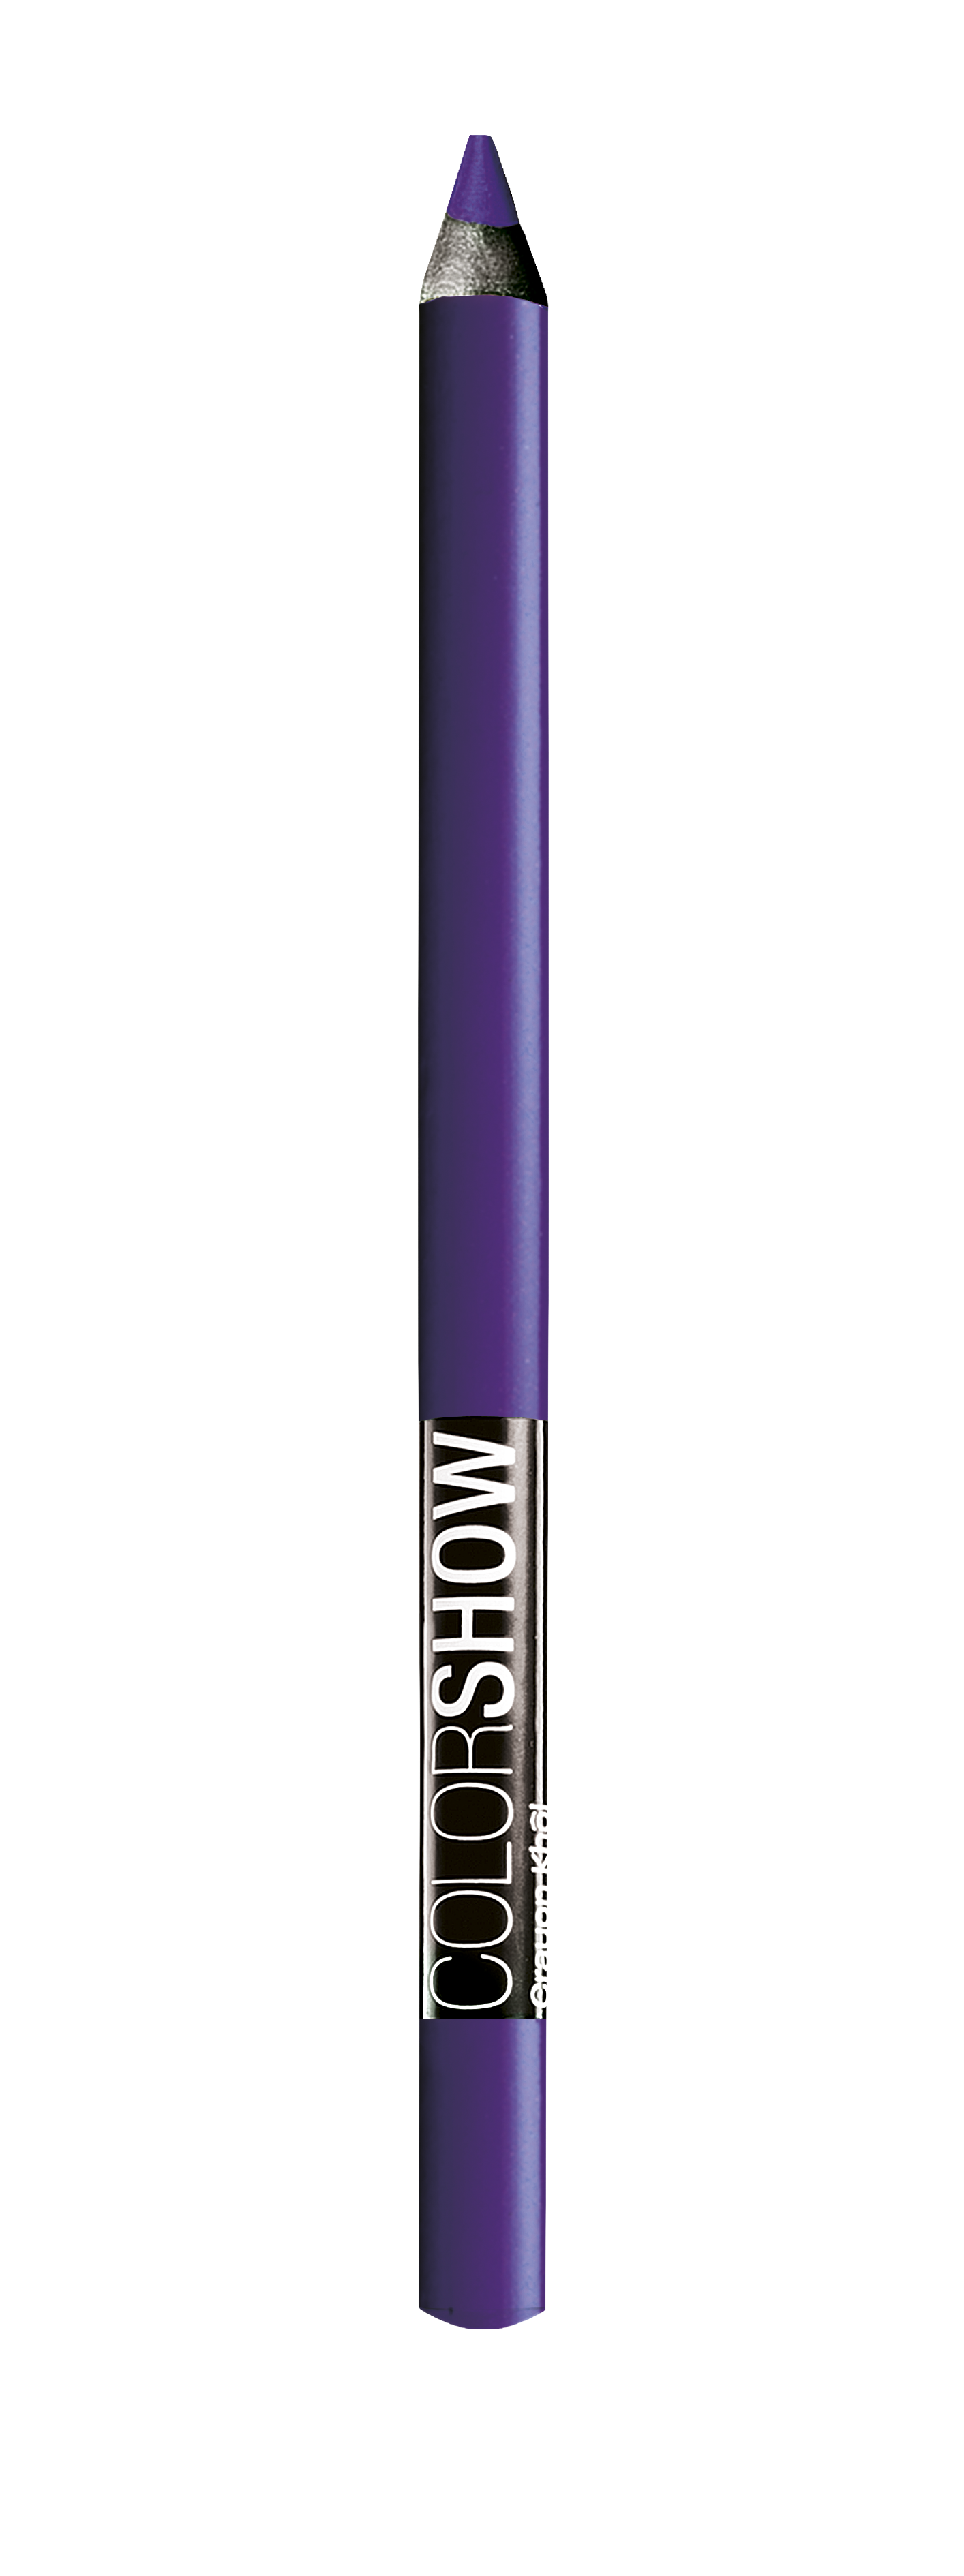 Maybelline Color Show Khol Liner - 320 Vibrant Violet - Paars - Oogpotlood